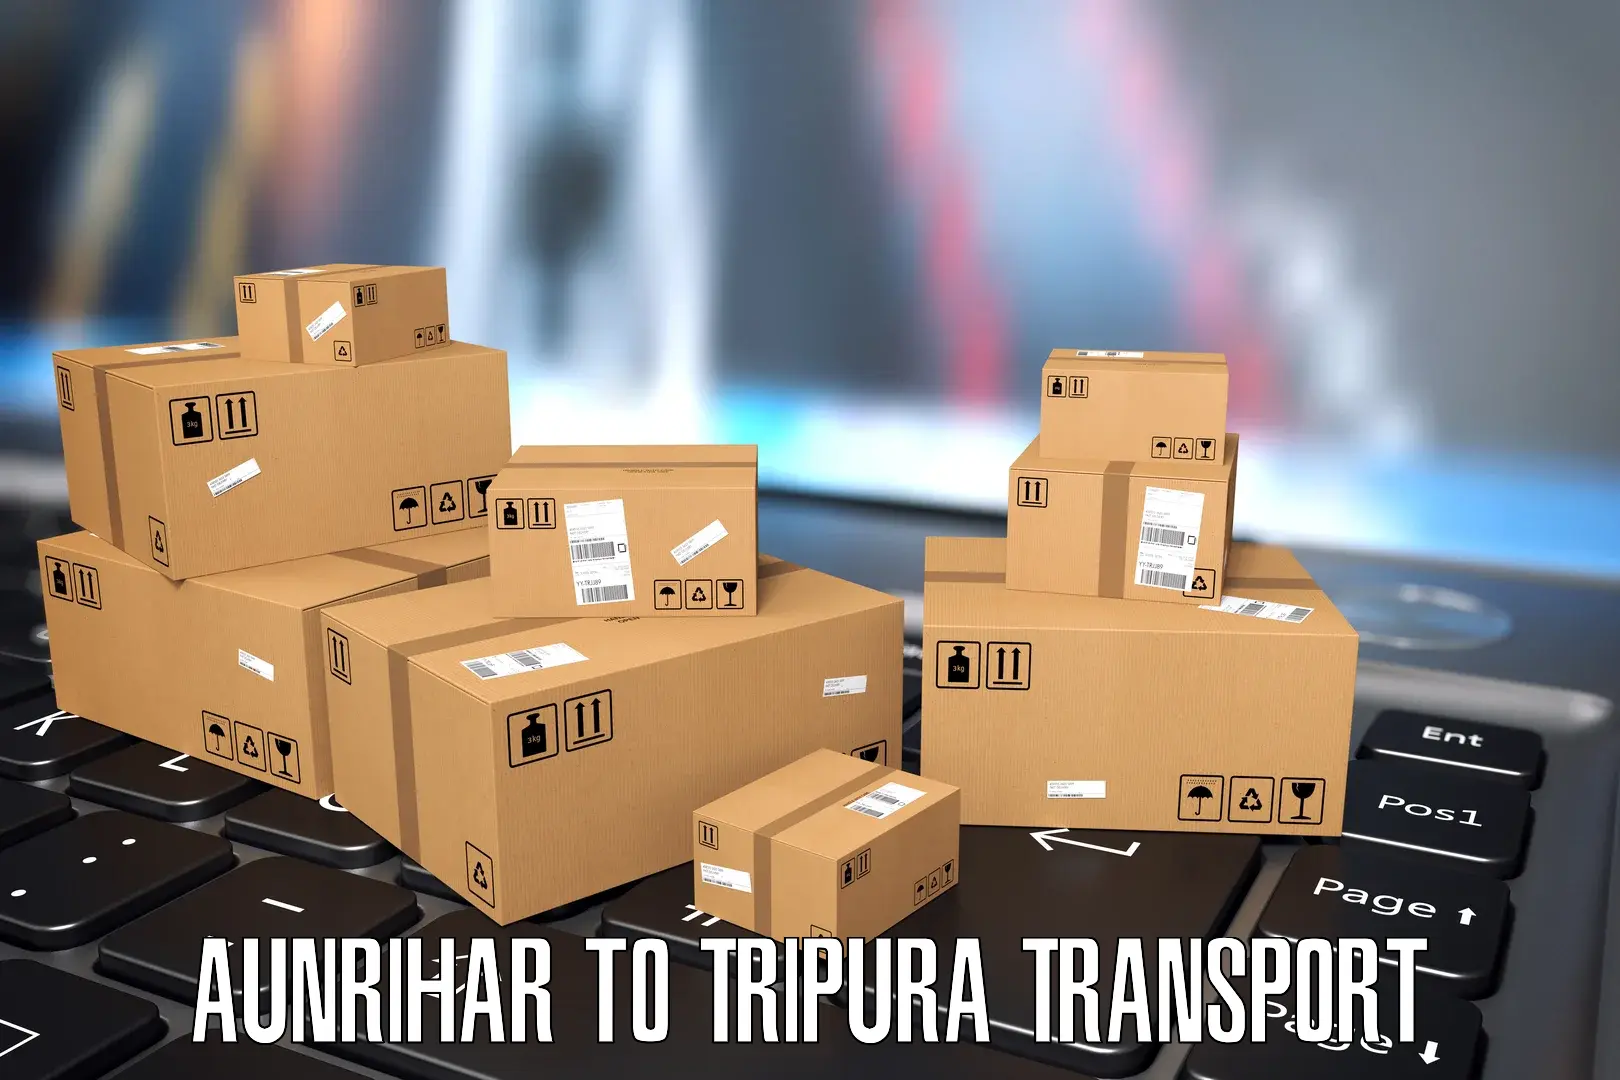 India truck logistics services Aunrihar to Udaipur Tripura